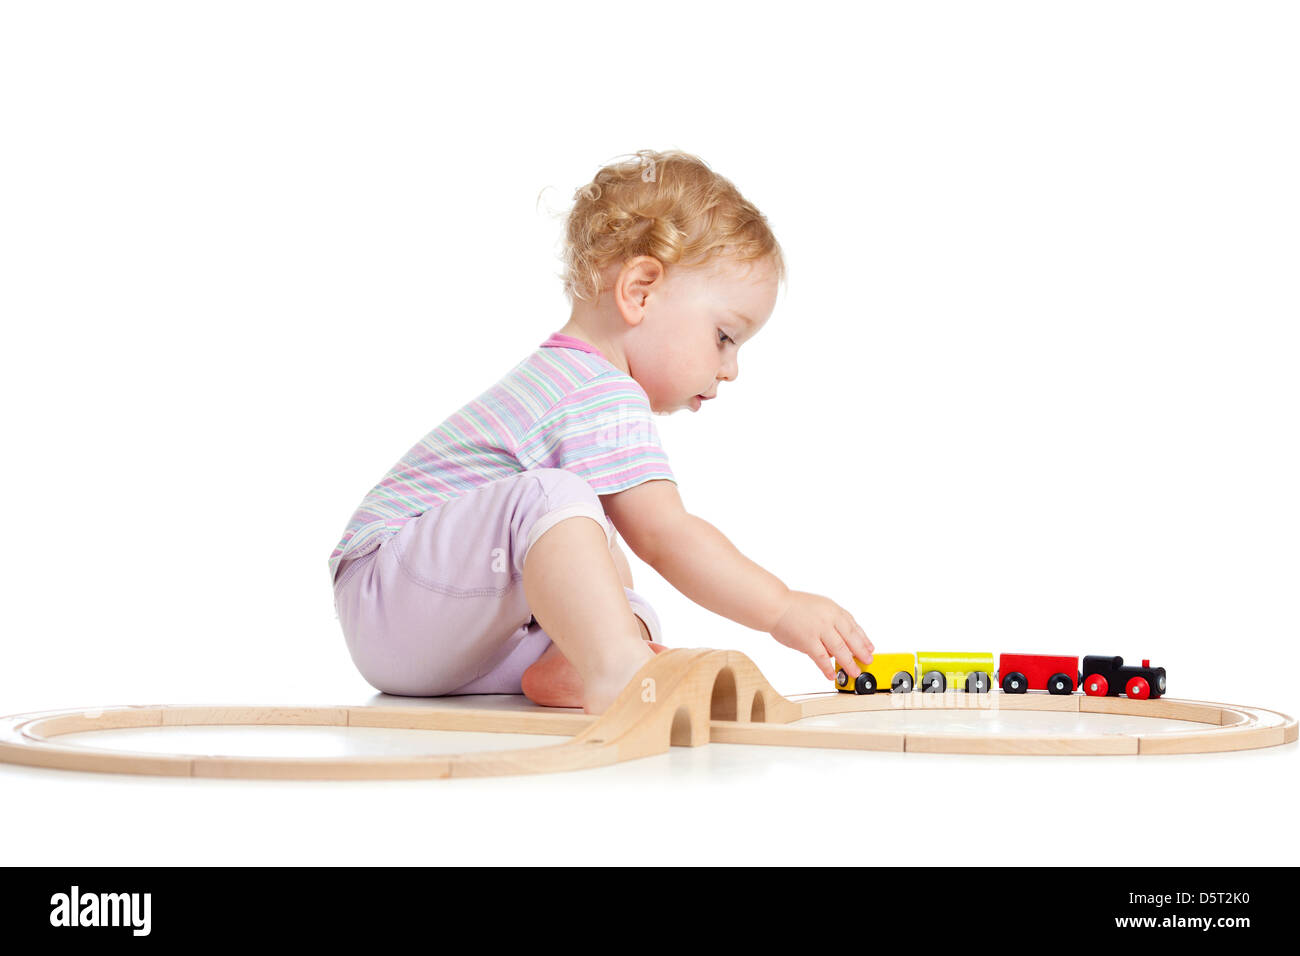 Lindo niño está jugando con tren de madera aislado en blanco Foto de stock